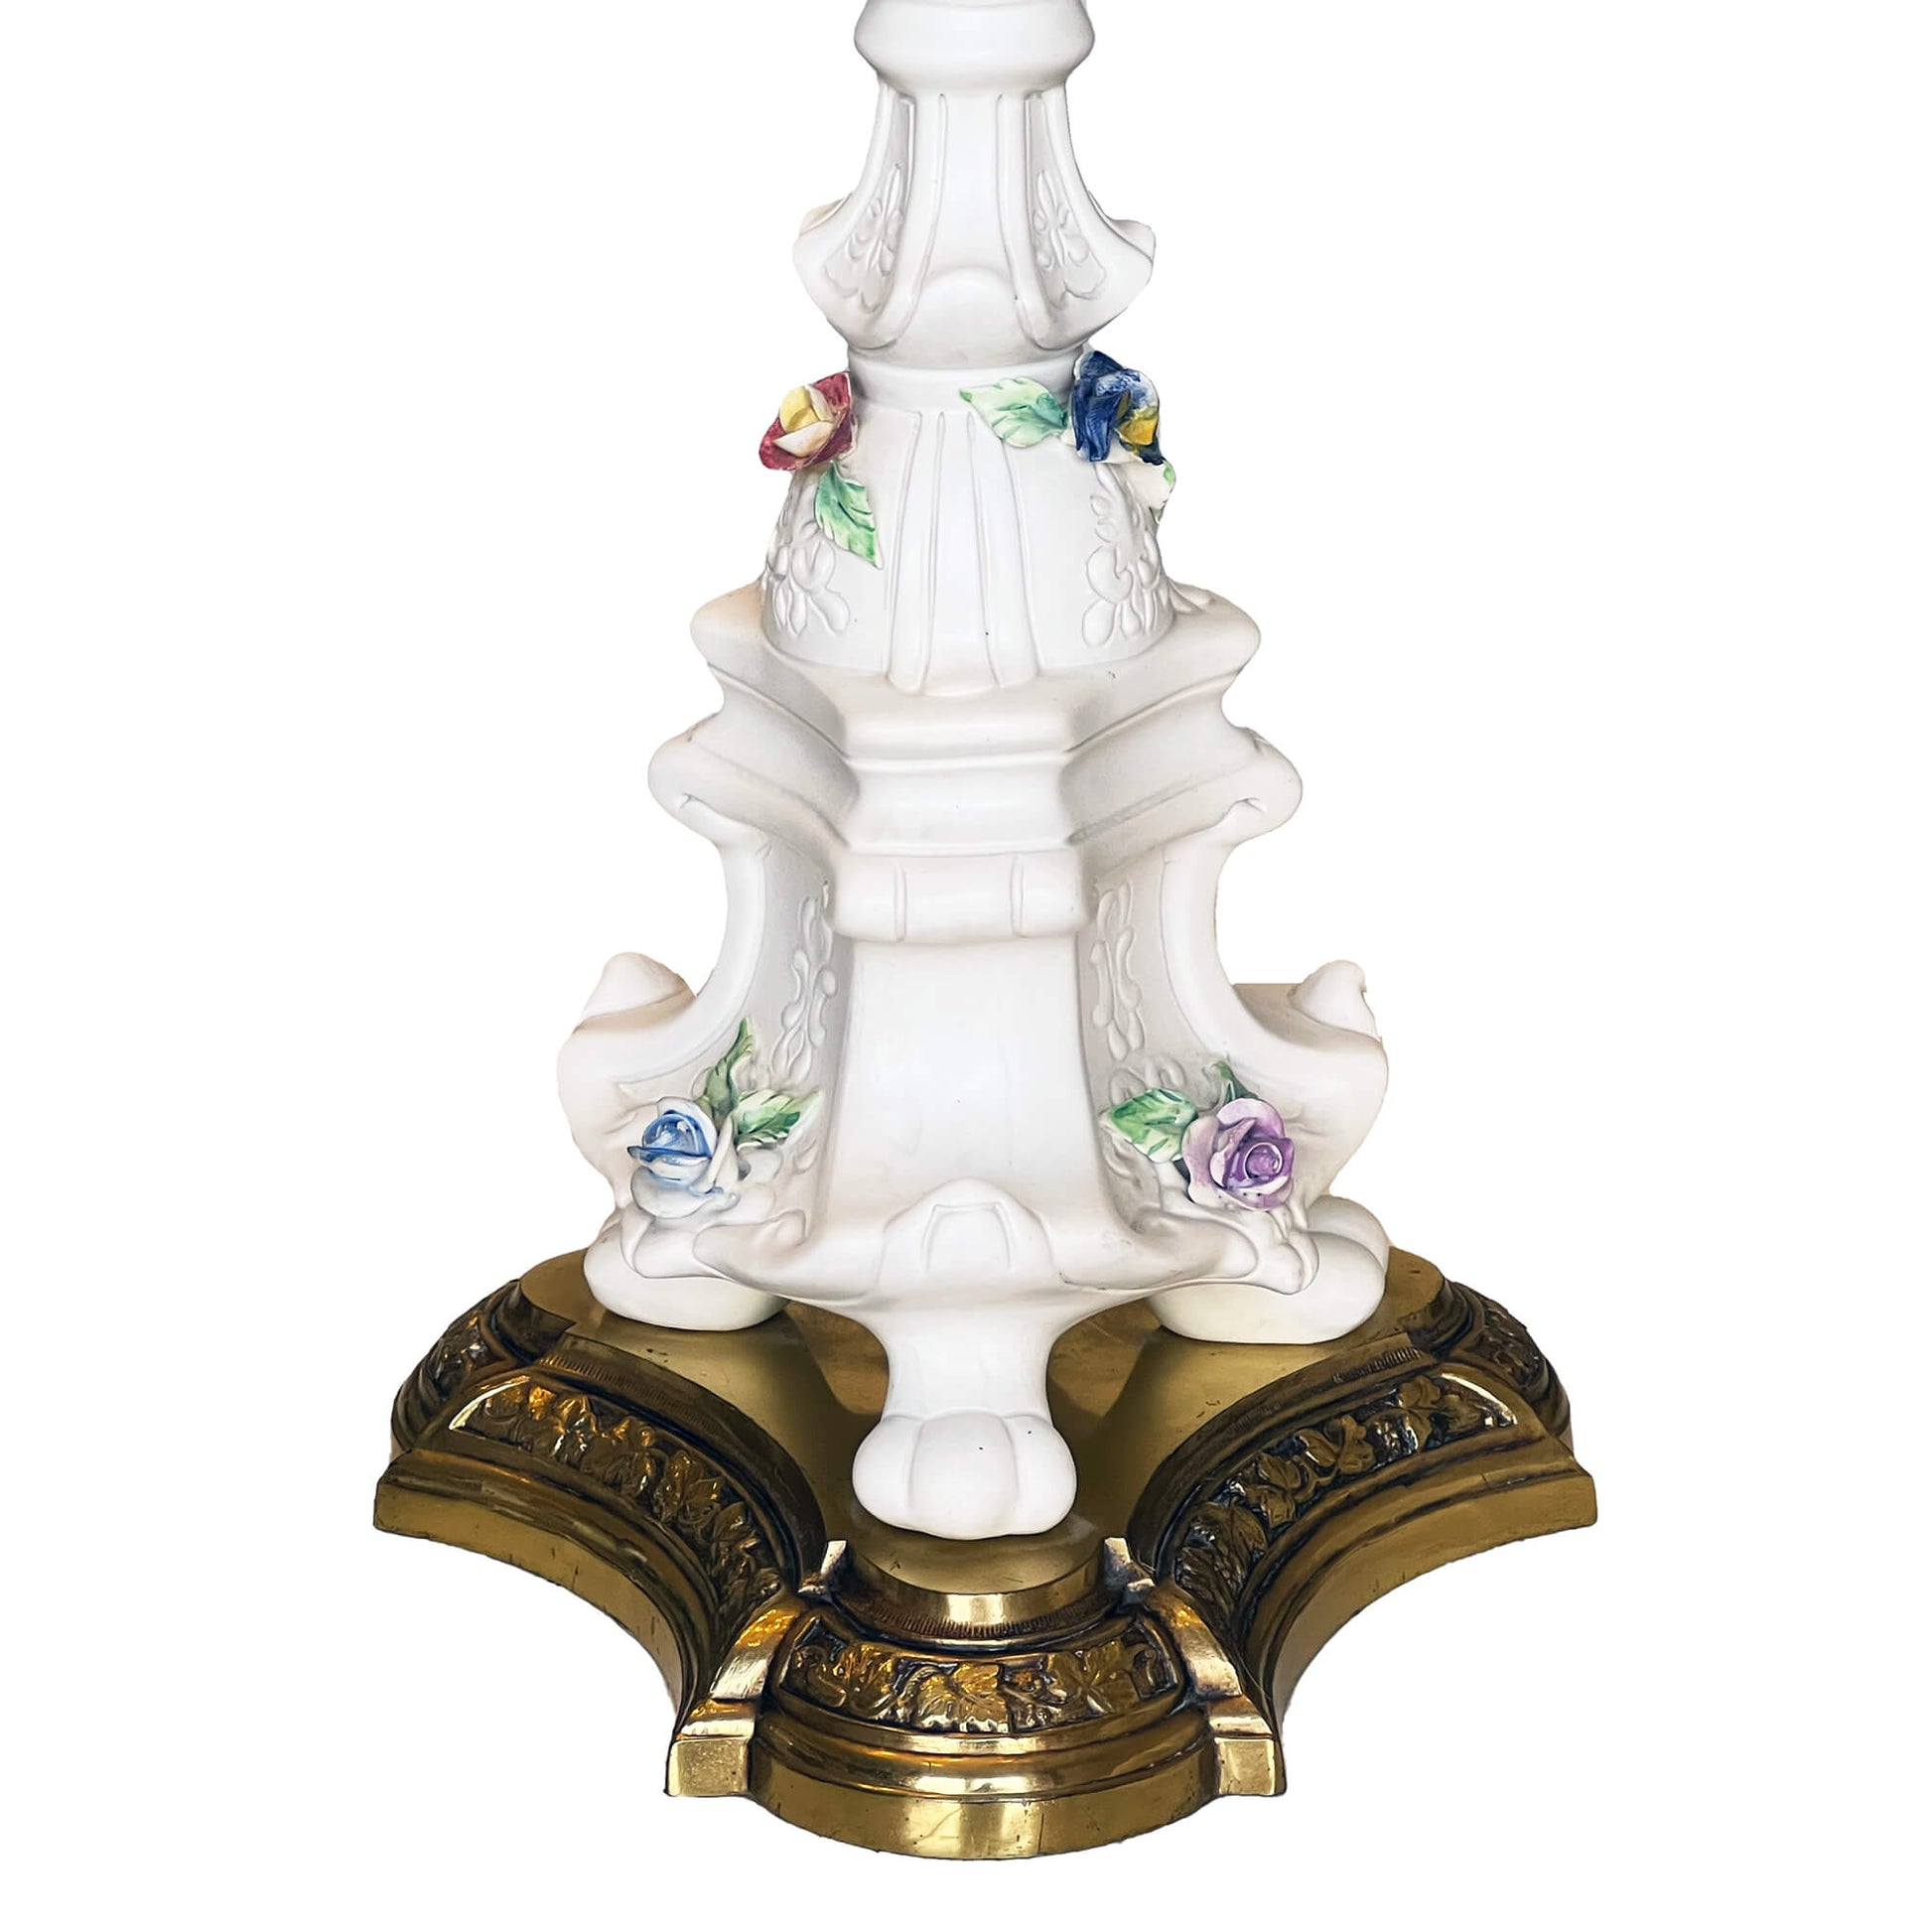 Vintage-Bassano-Capodimente-Table-Lamp.-3001-Spec-Lamp.-Rare.-View-close-up.-Shop-eBargainsAndDeals.com or Etsy